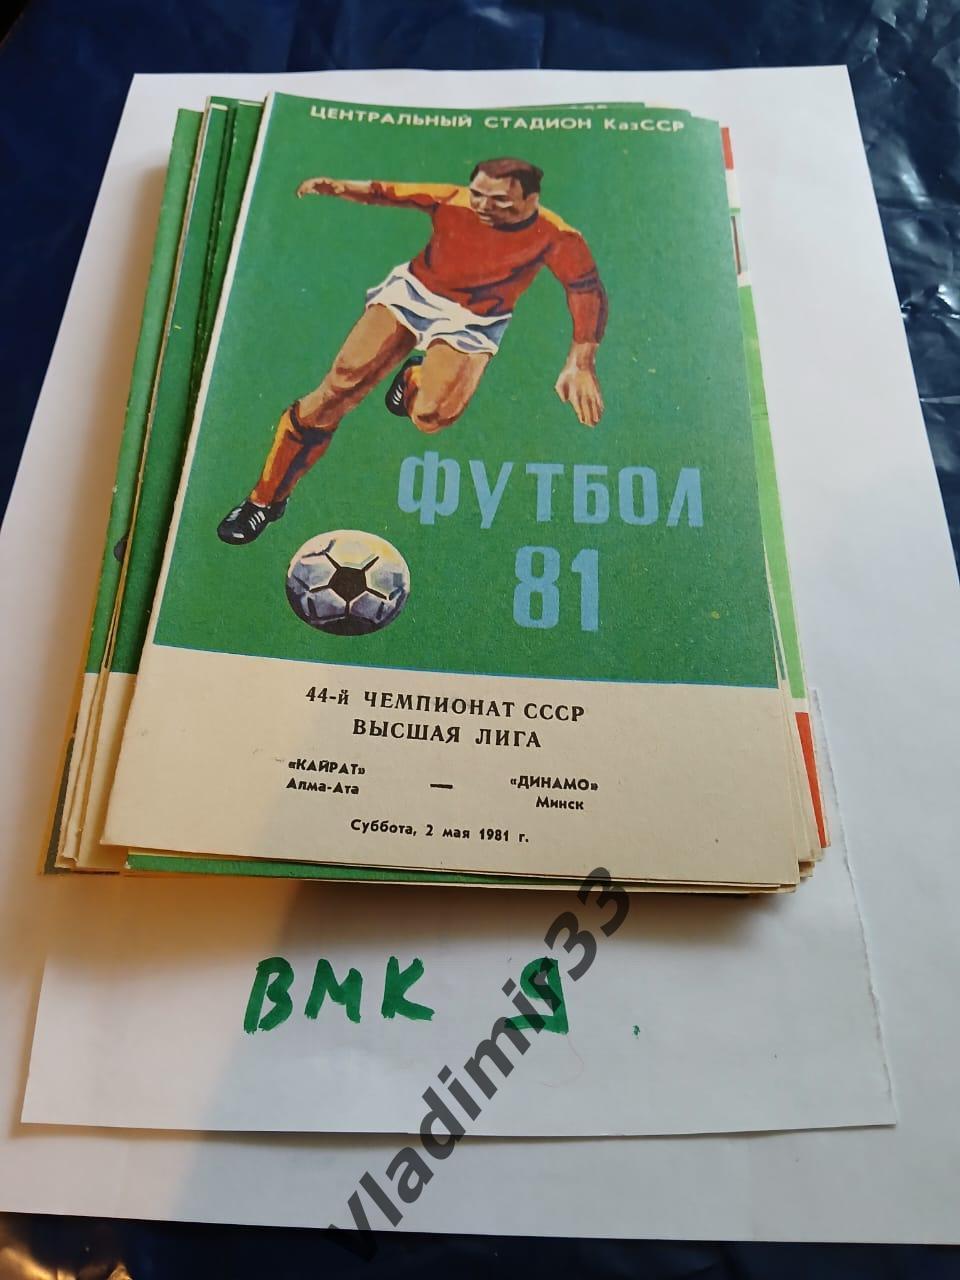 Кайрат Алма-Ата - Динамо Минск 1981